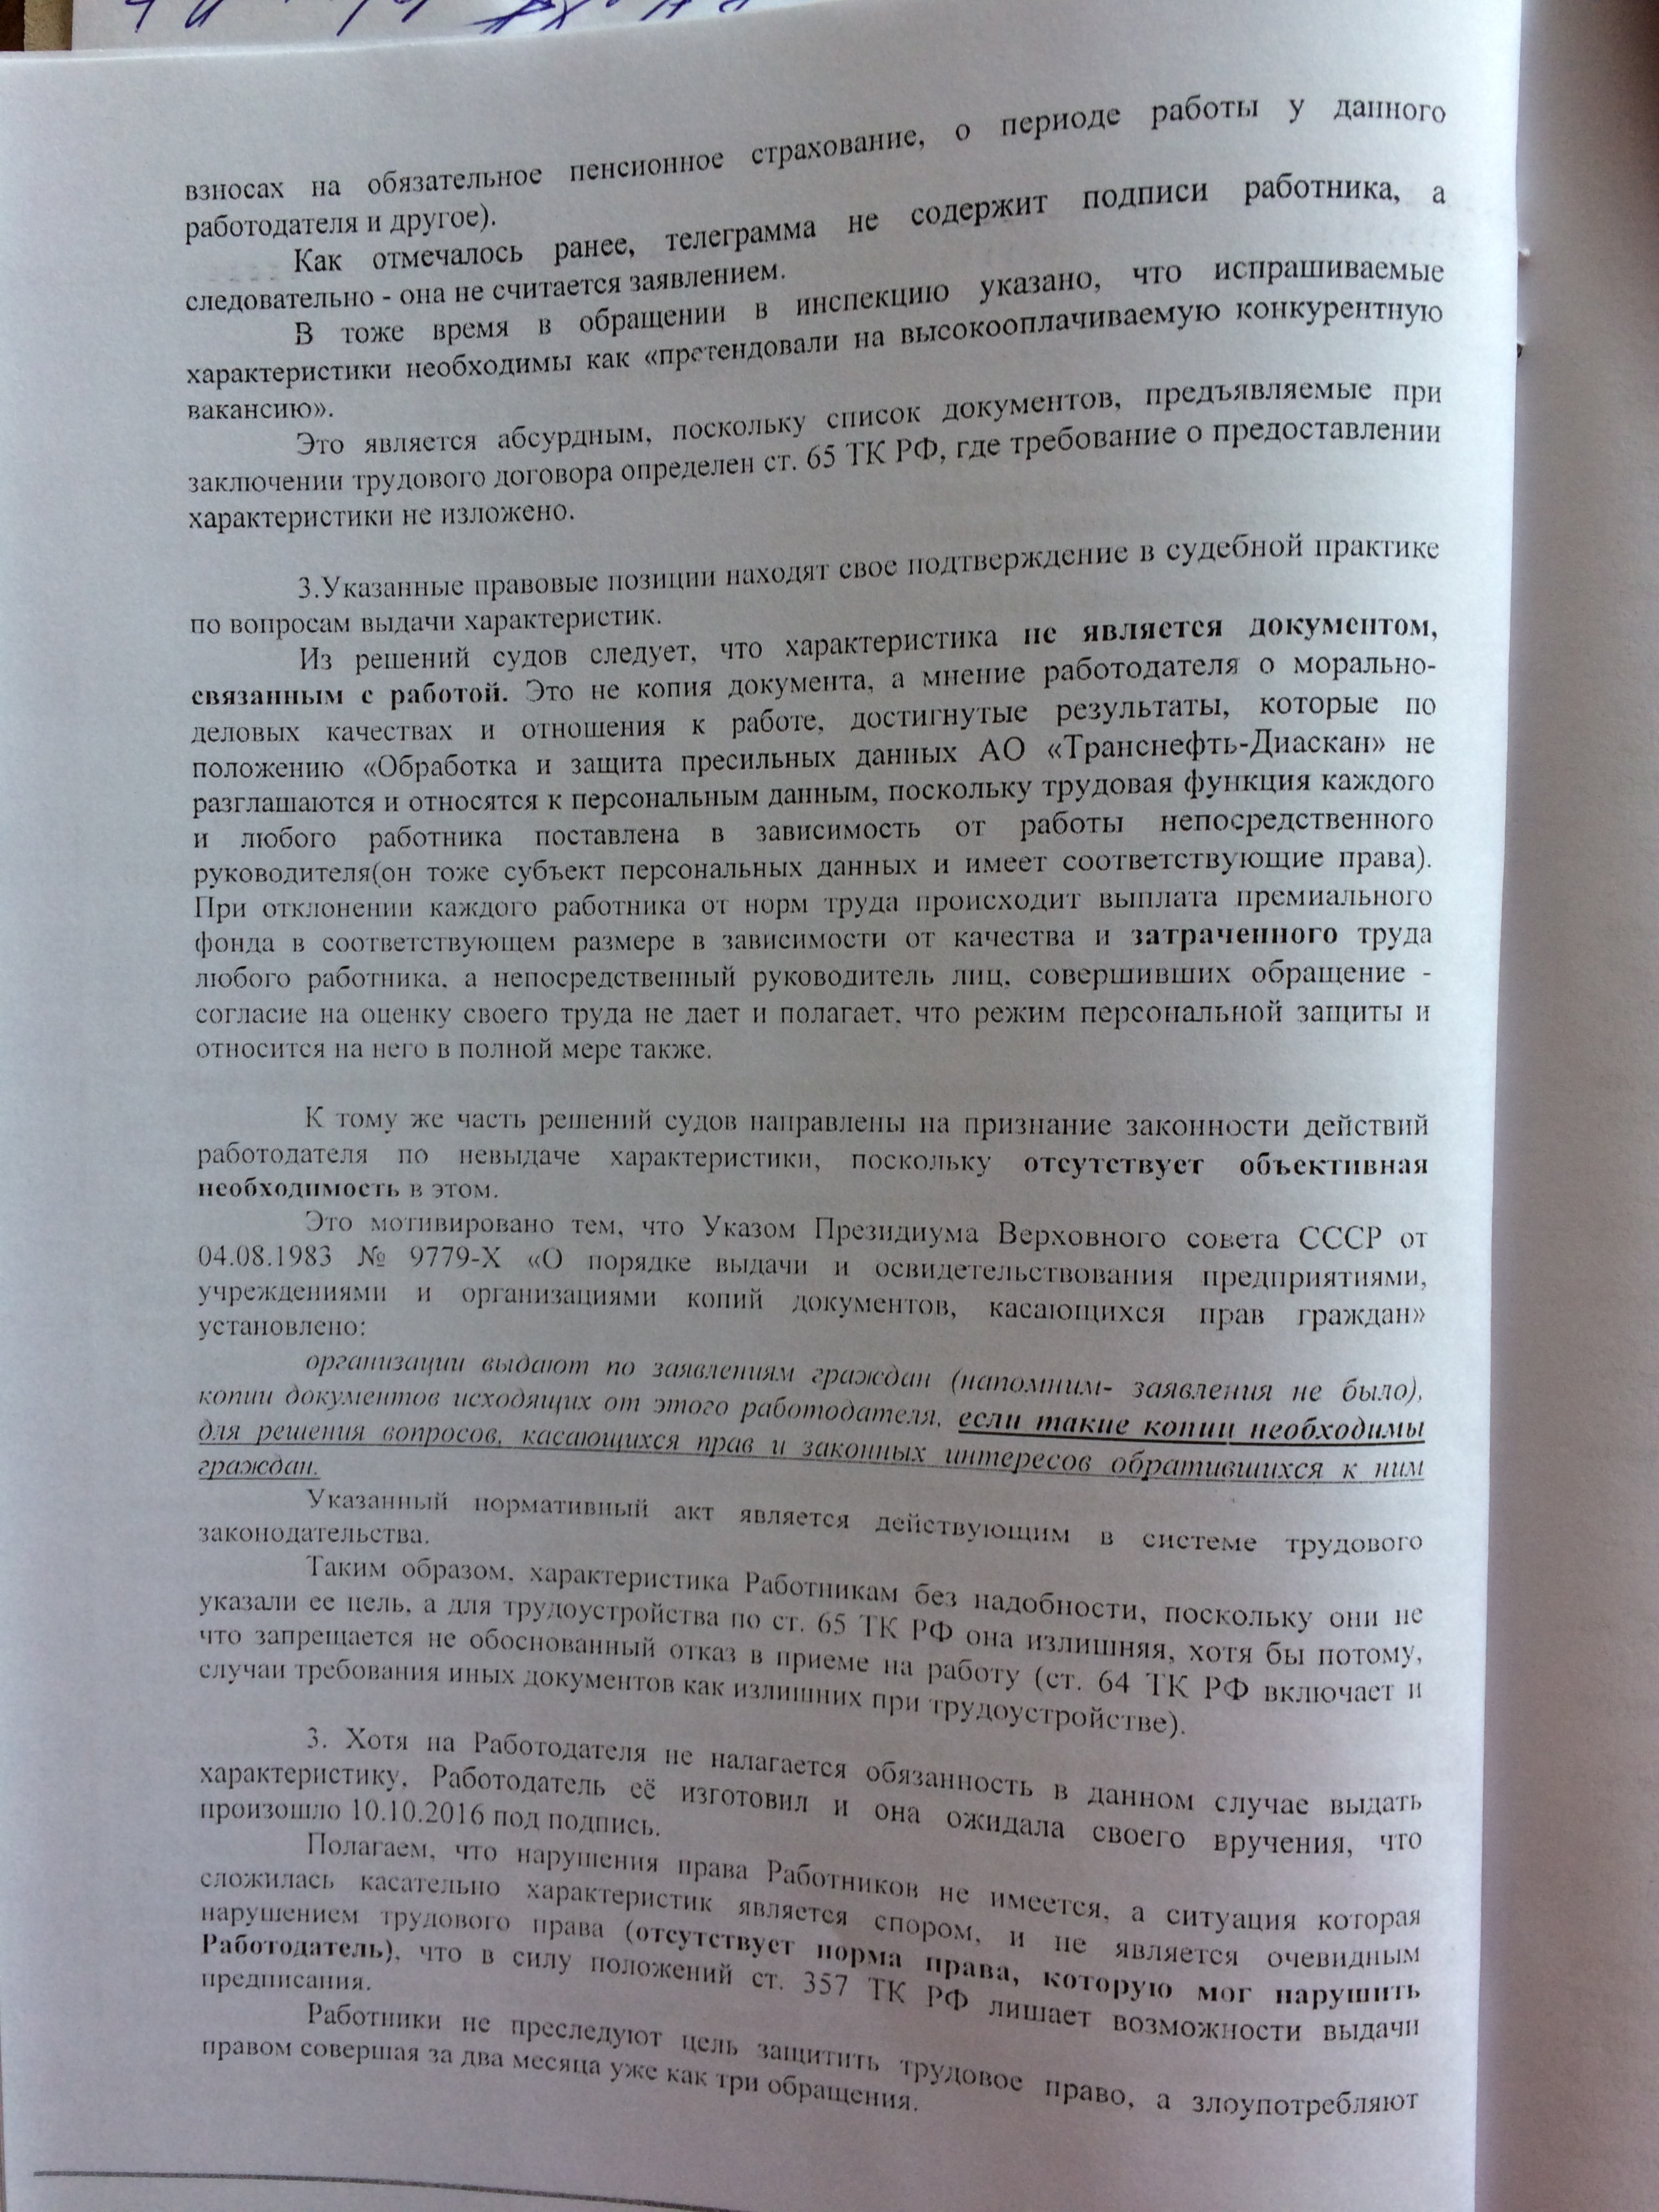 Фото документов проверки Луховицкой городской прокуратурой - 126 (5)